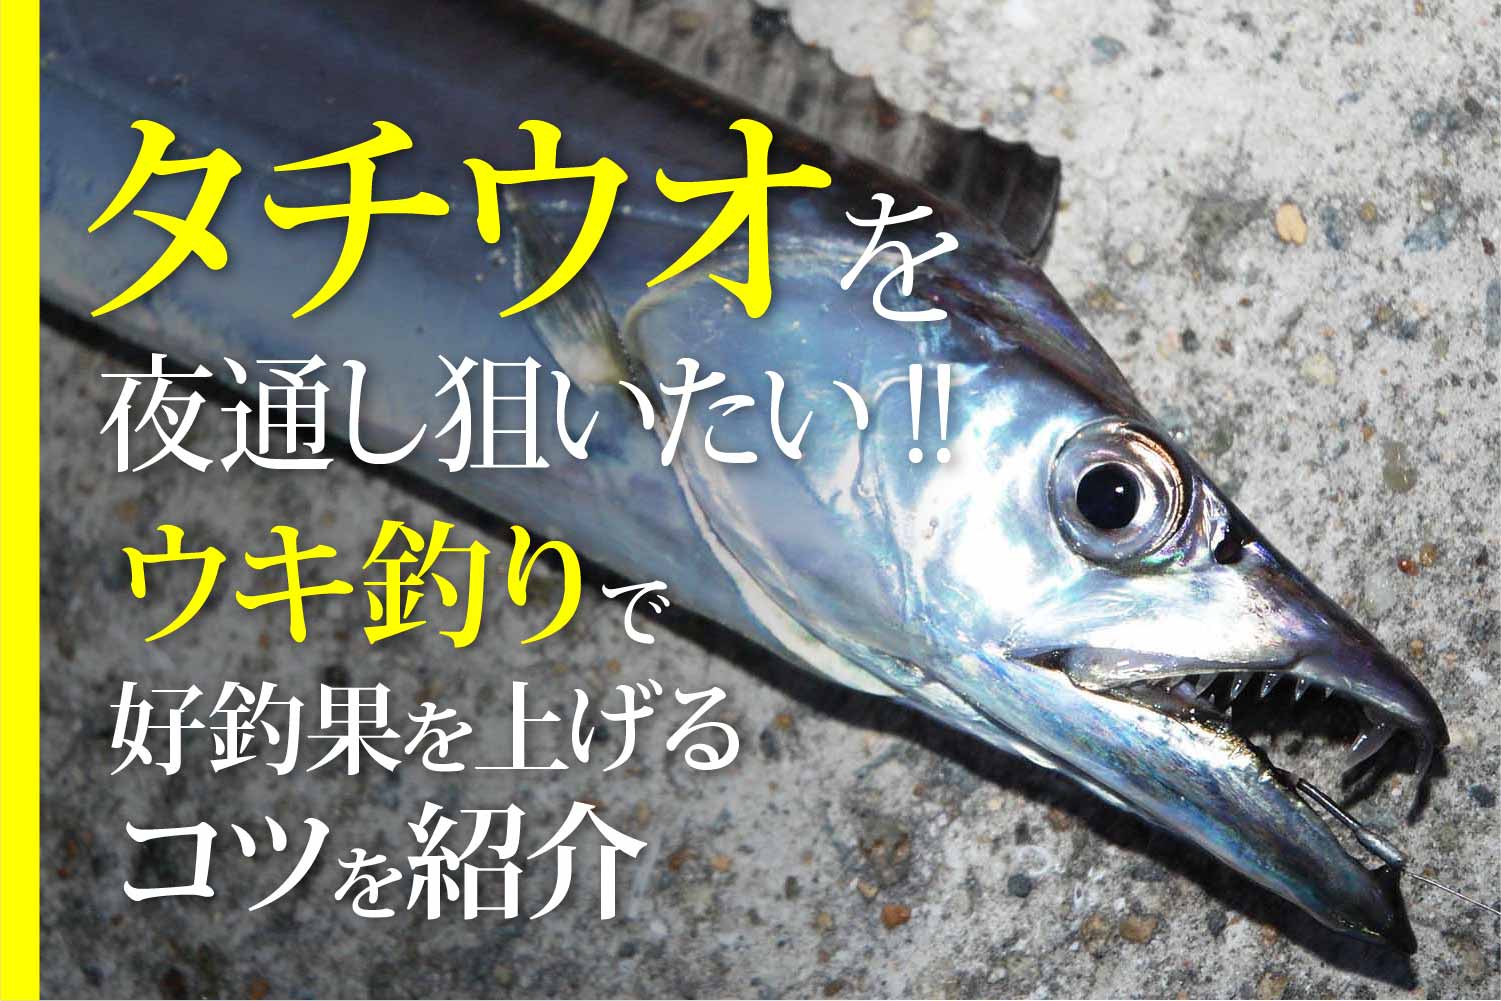 タチウオ 太刀魚 関西のつりweb 釣りの総合情報メディアmeme